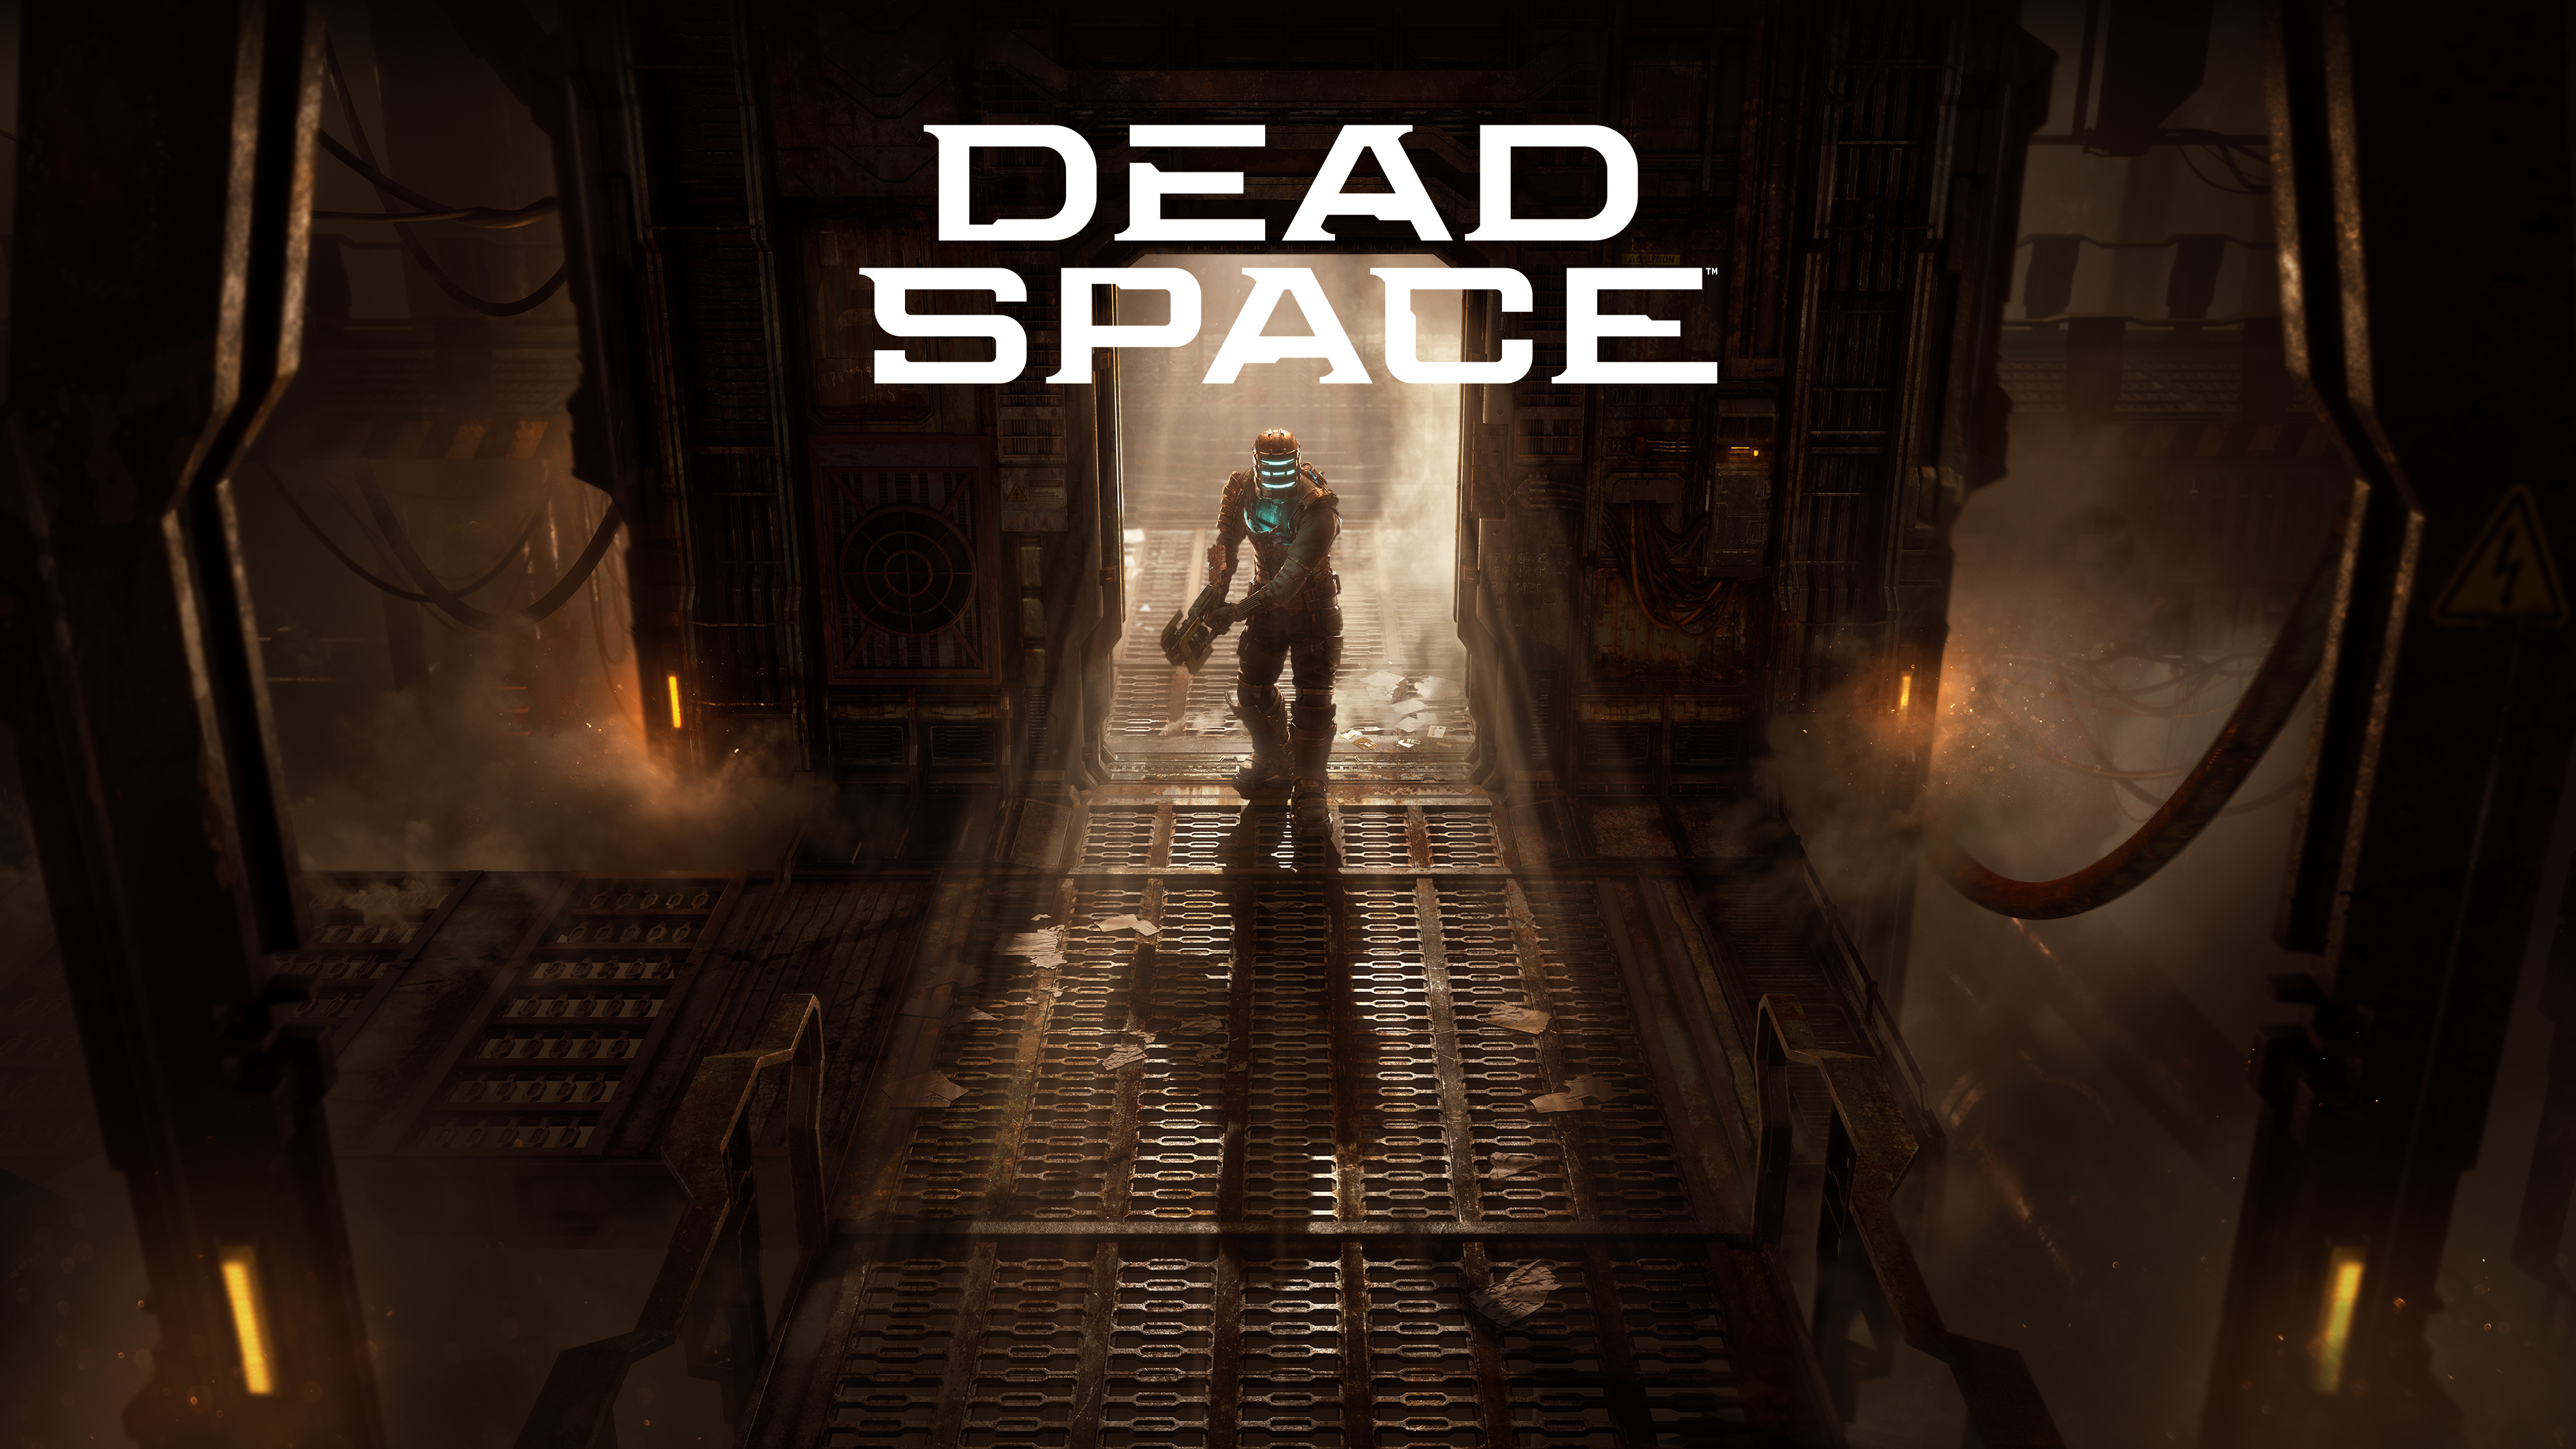 Dead Space Keyart 02 16x9 3840x2160 Logo